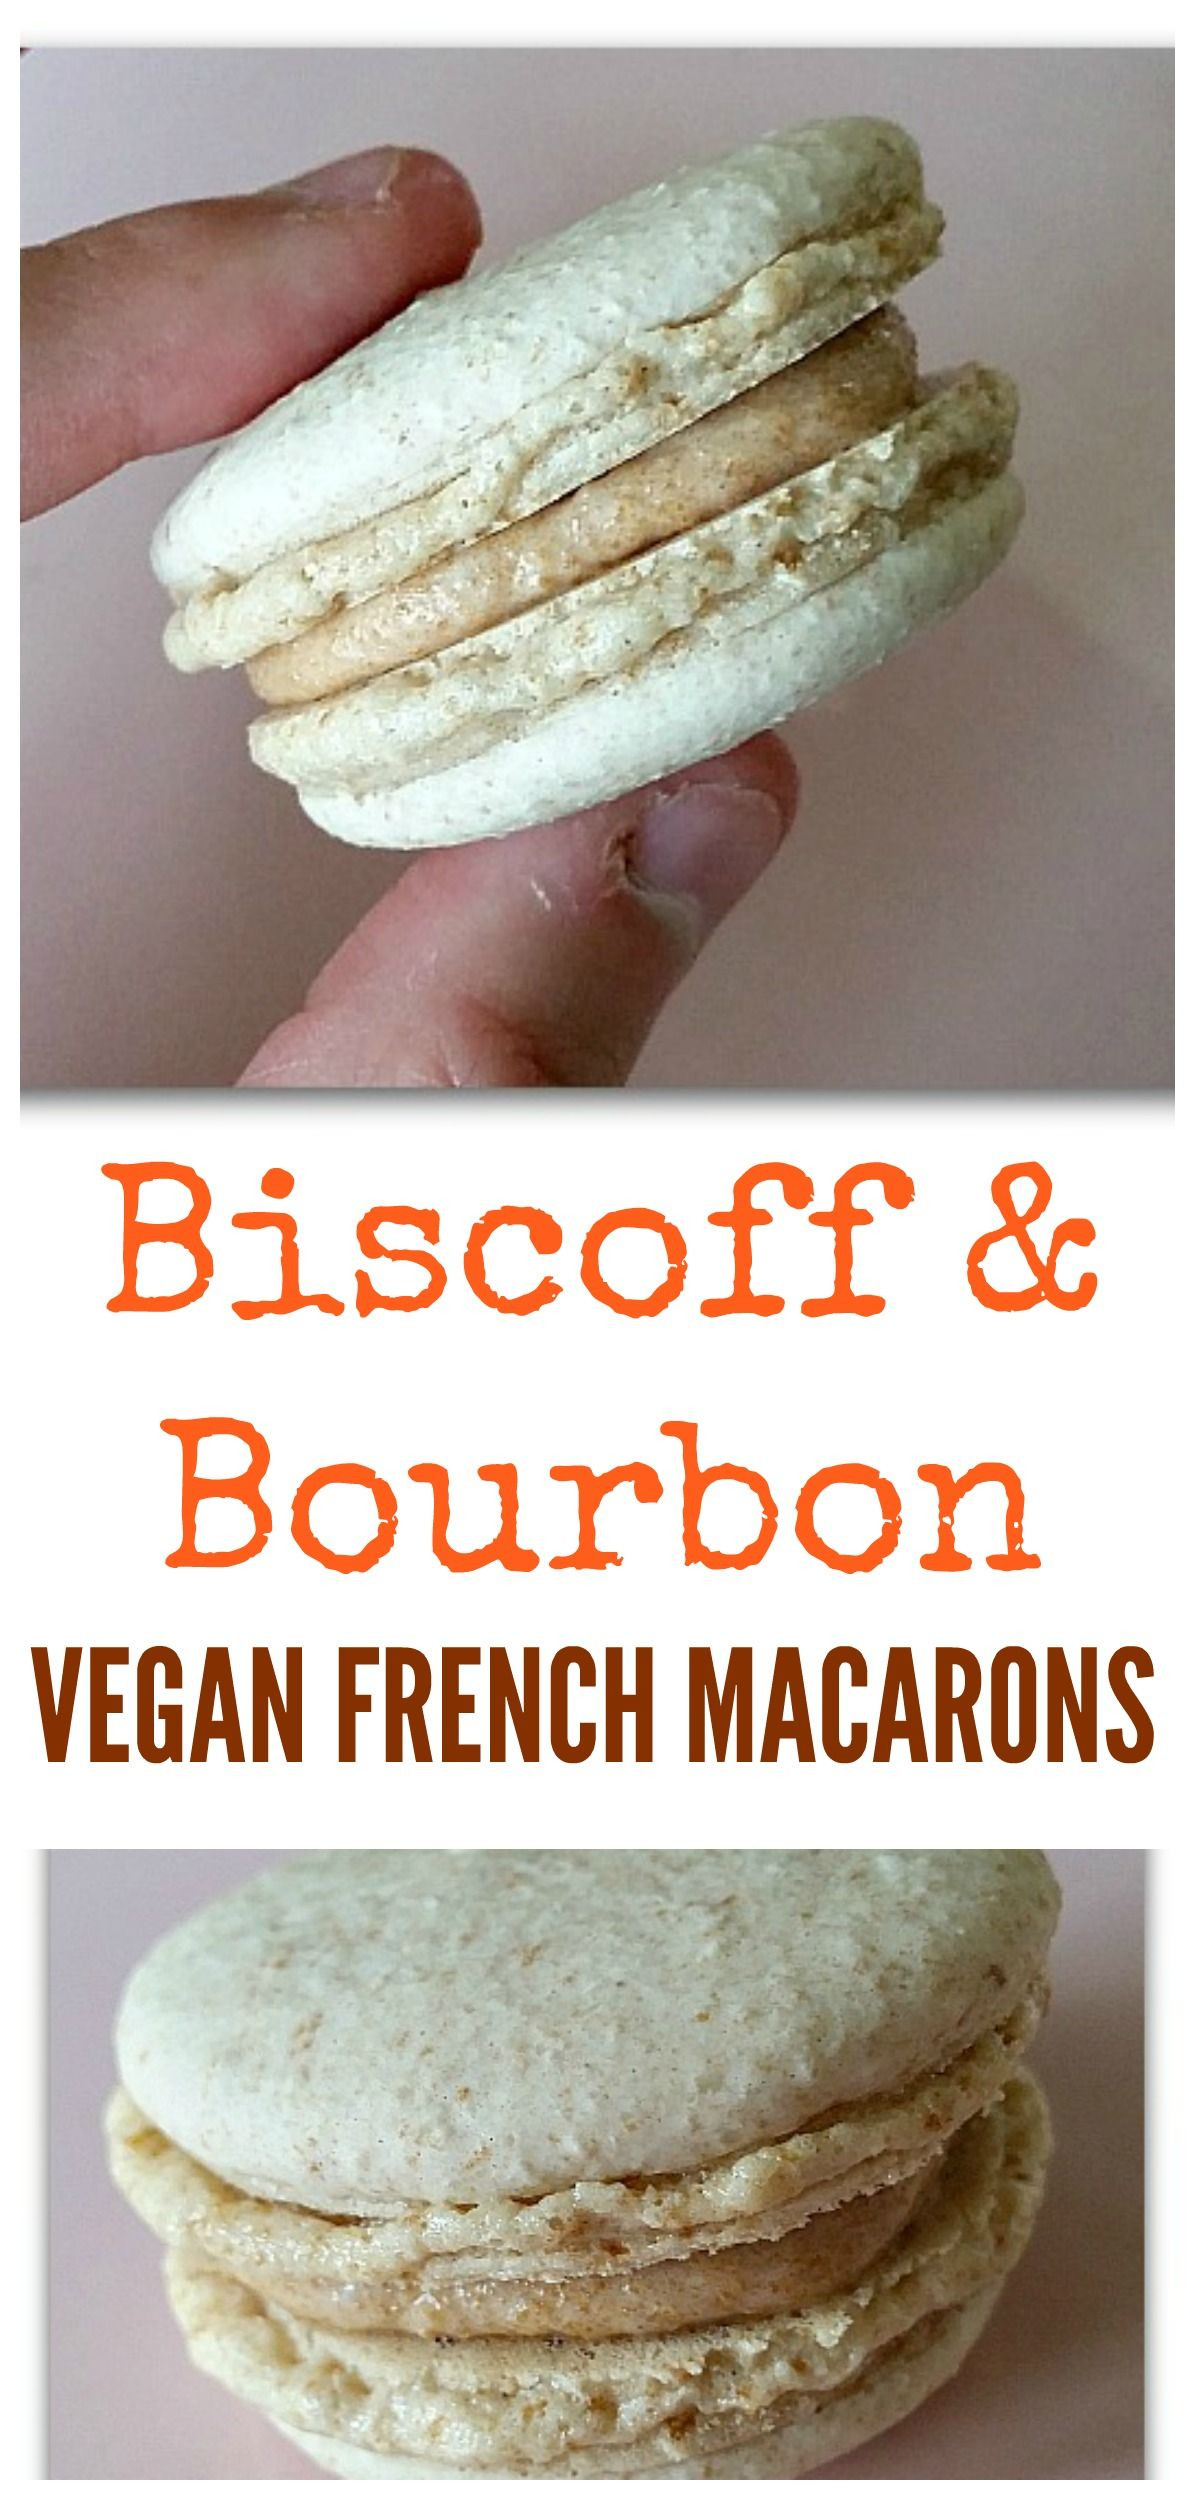 Vegan French Macaroons
 Vegan French Macarons Biscoff & Bourbon